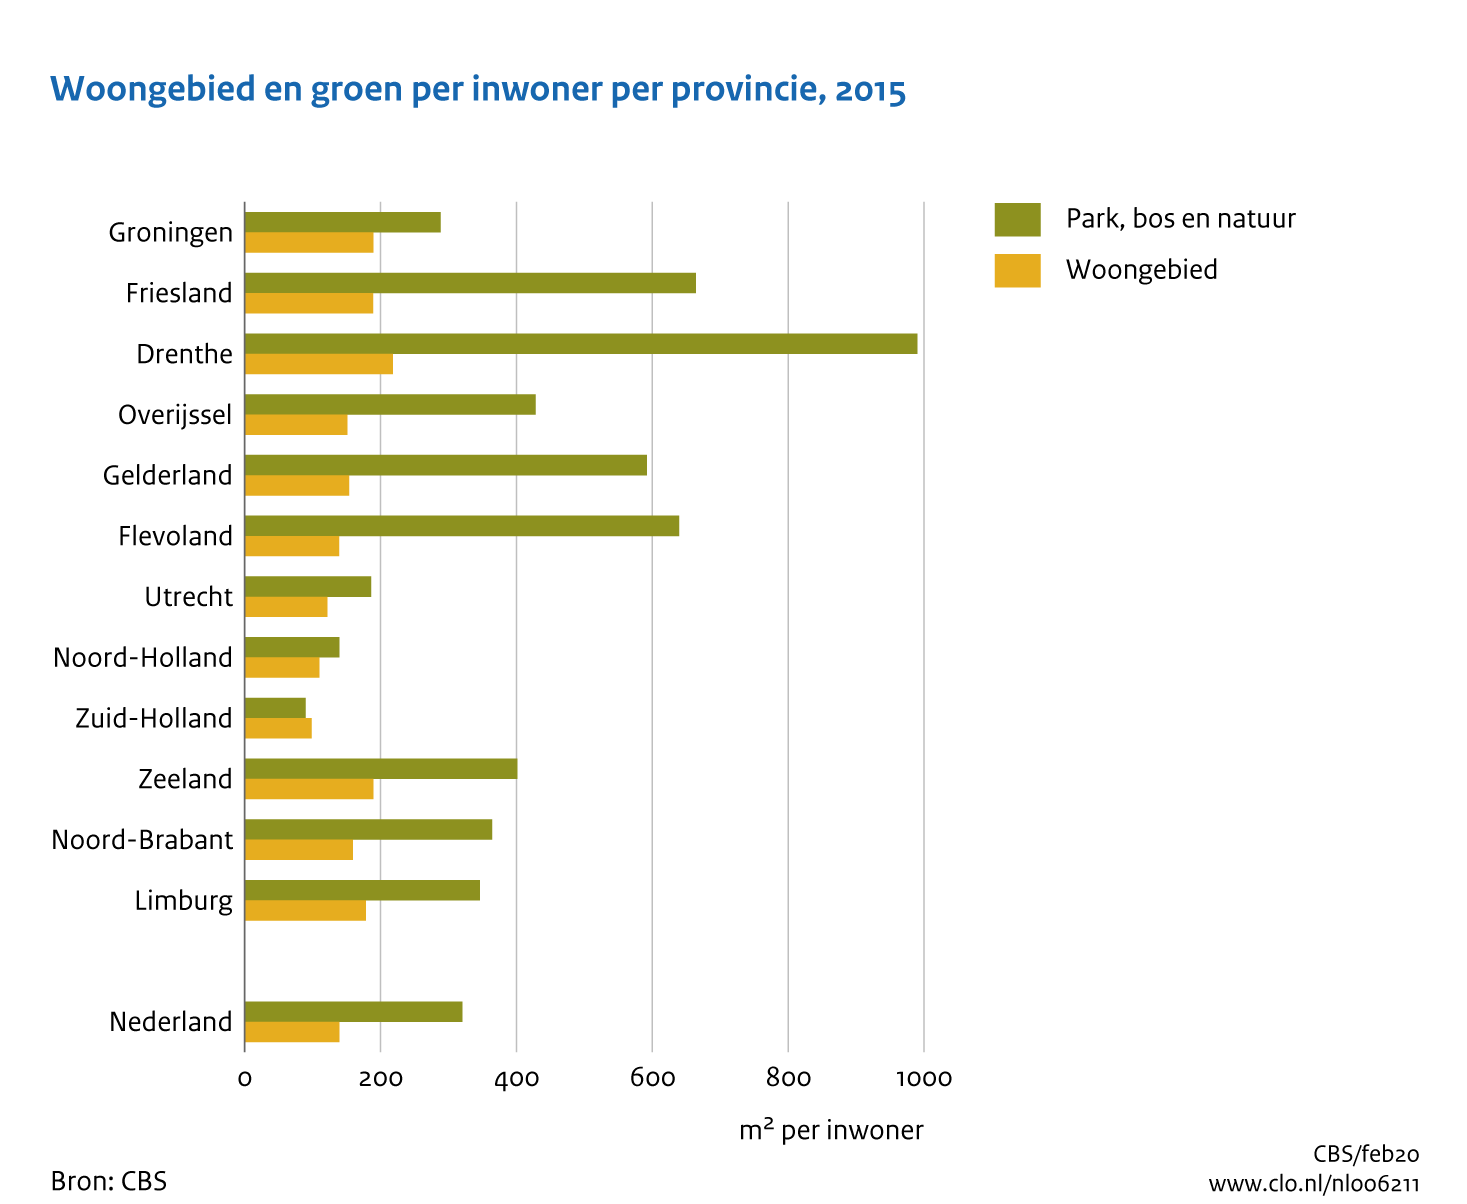 Figuur  Woongebied en groen per inwoner per provincie, 2015 . In de rest van de tekst wordt deze figuur uitgebreider uitgelegd.